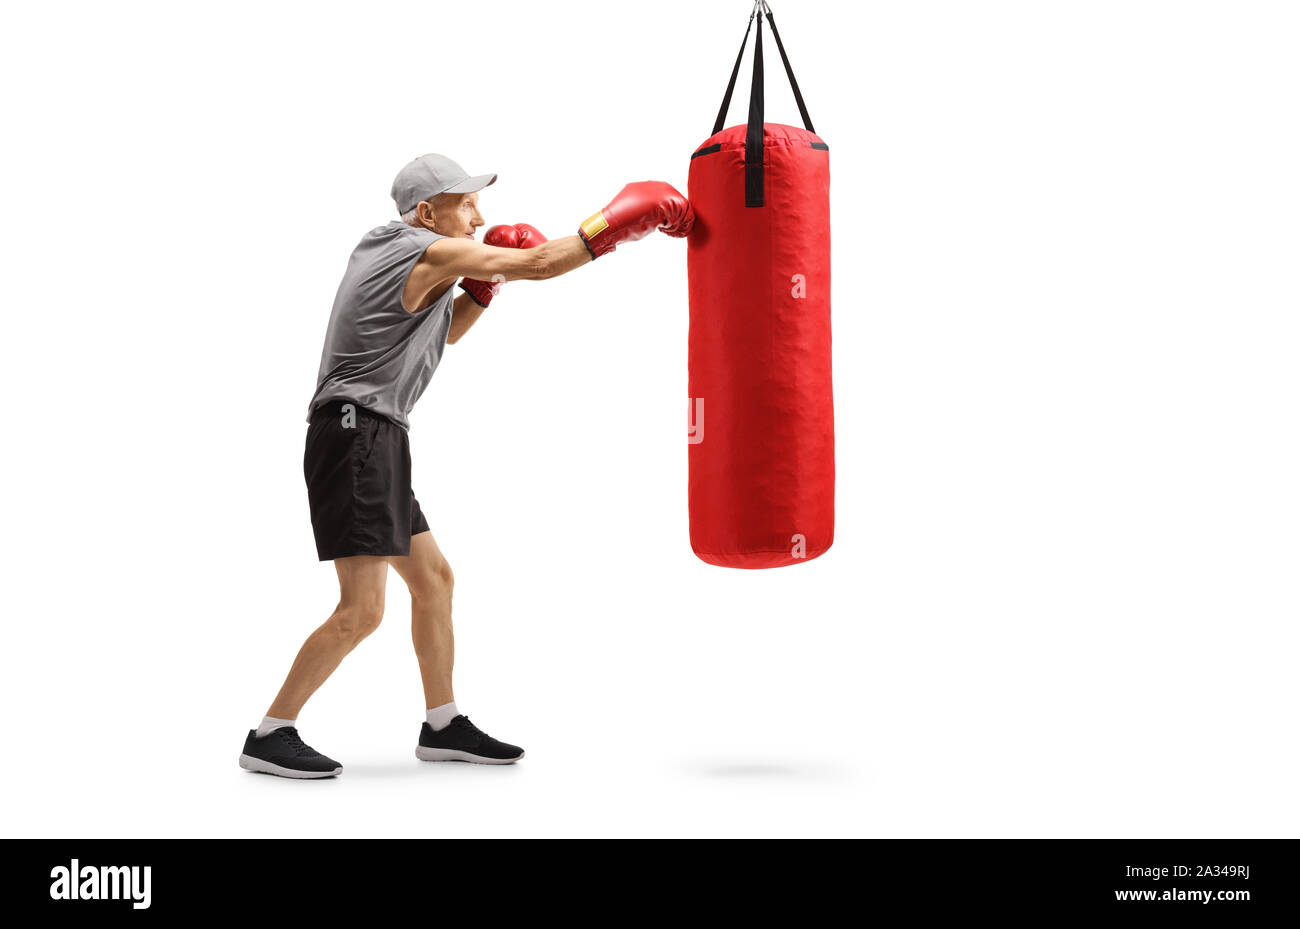 Sac de boxe de bureau Heavy Duty Boxing Punch Ball pour les garçons